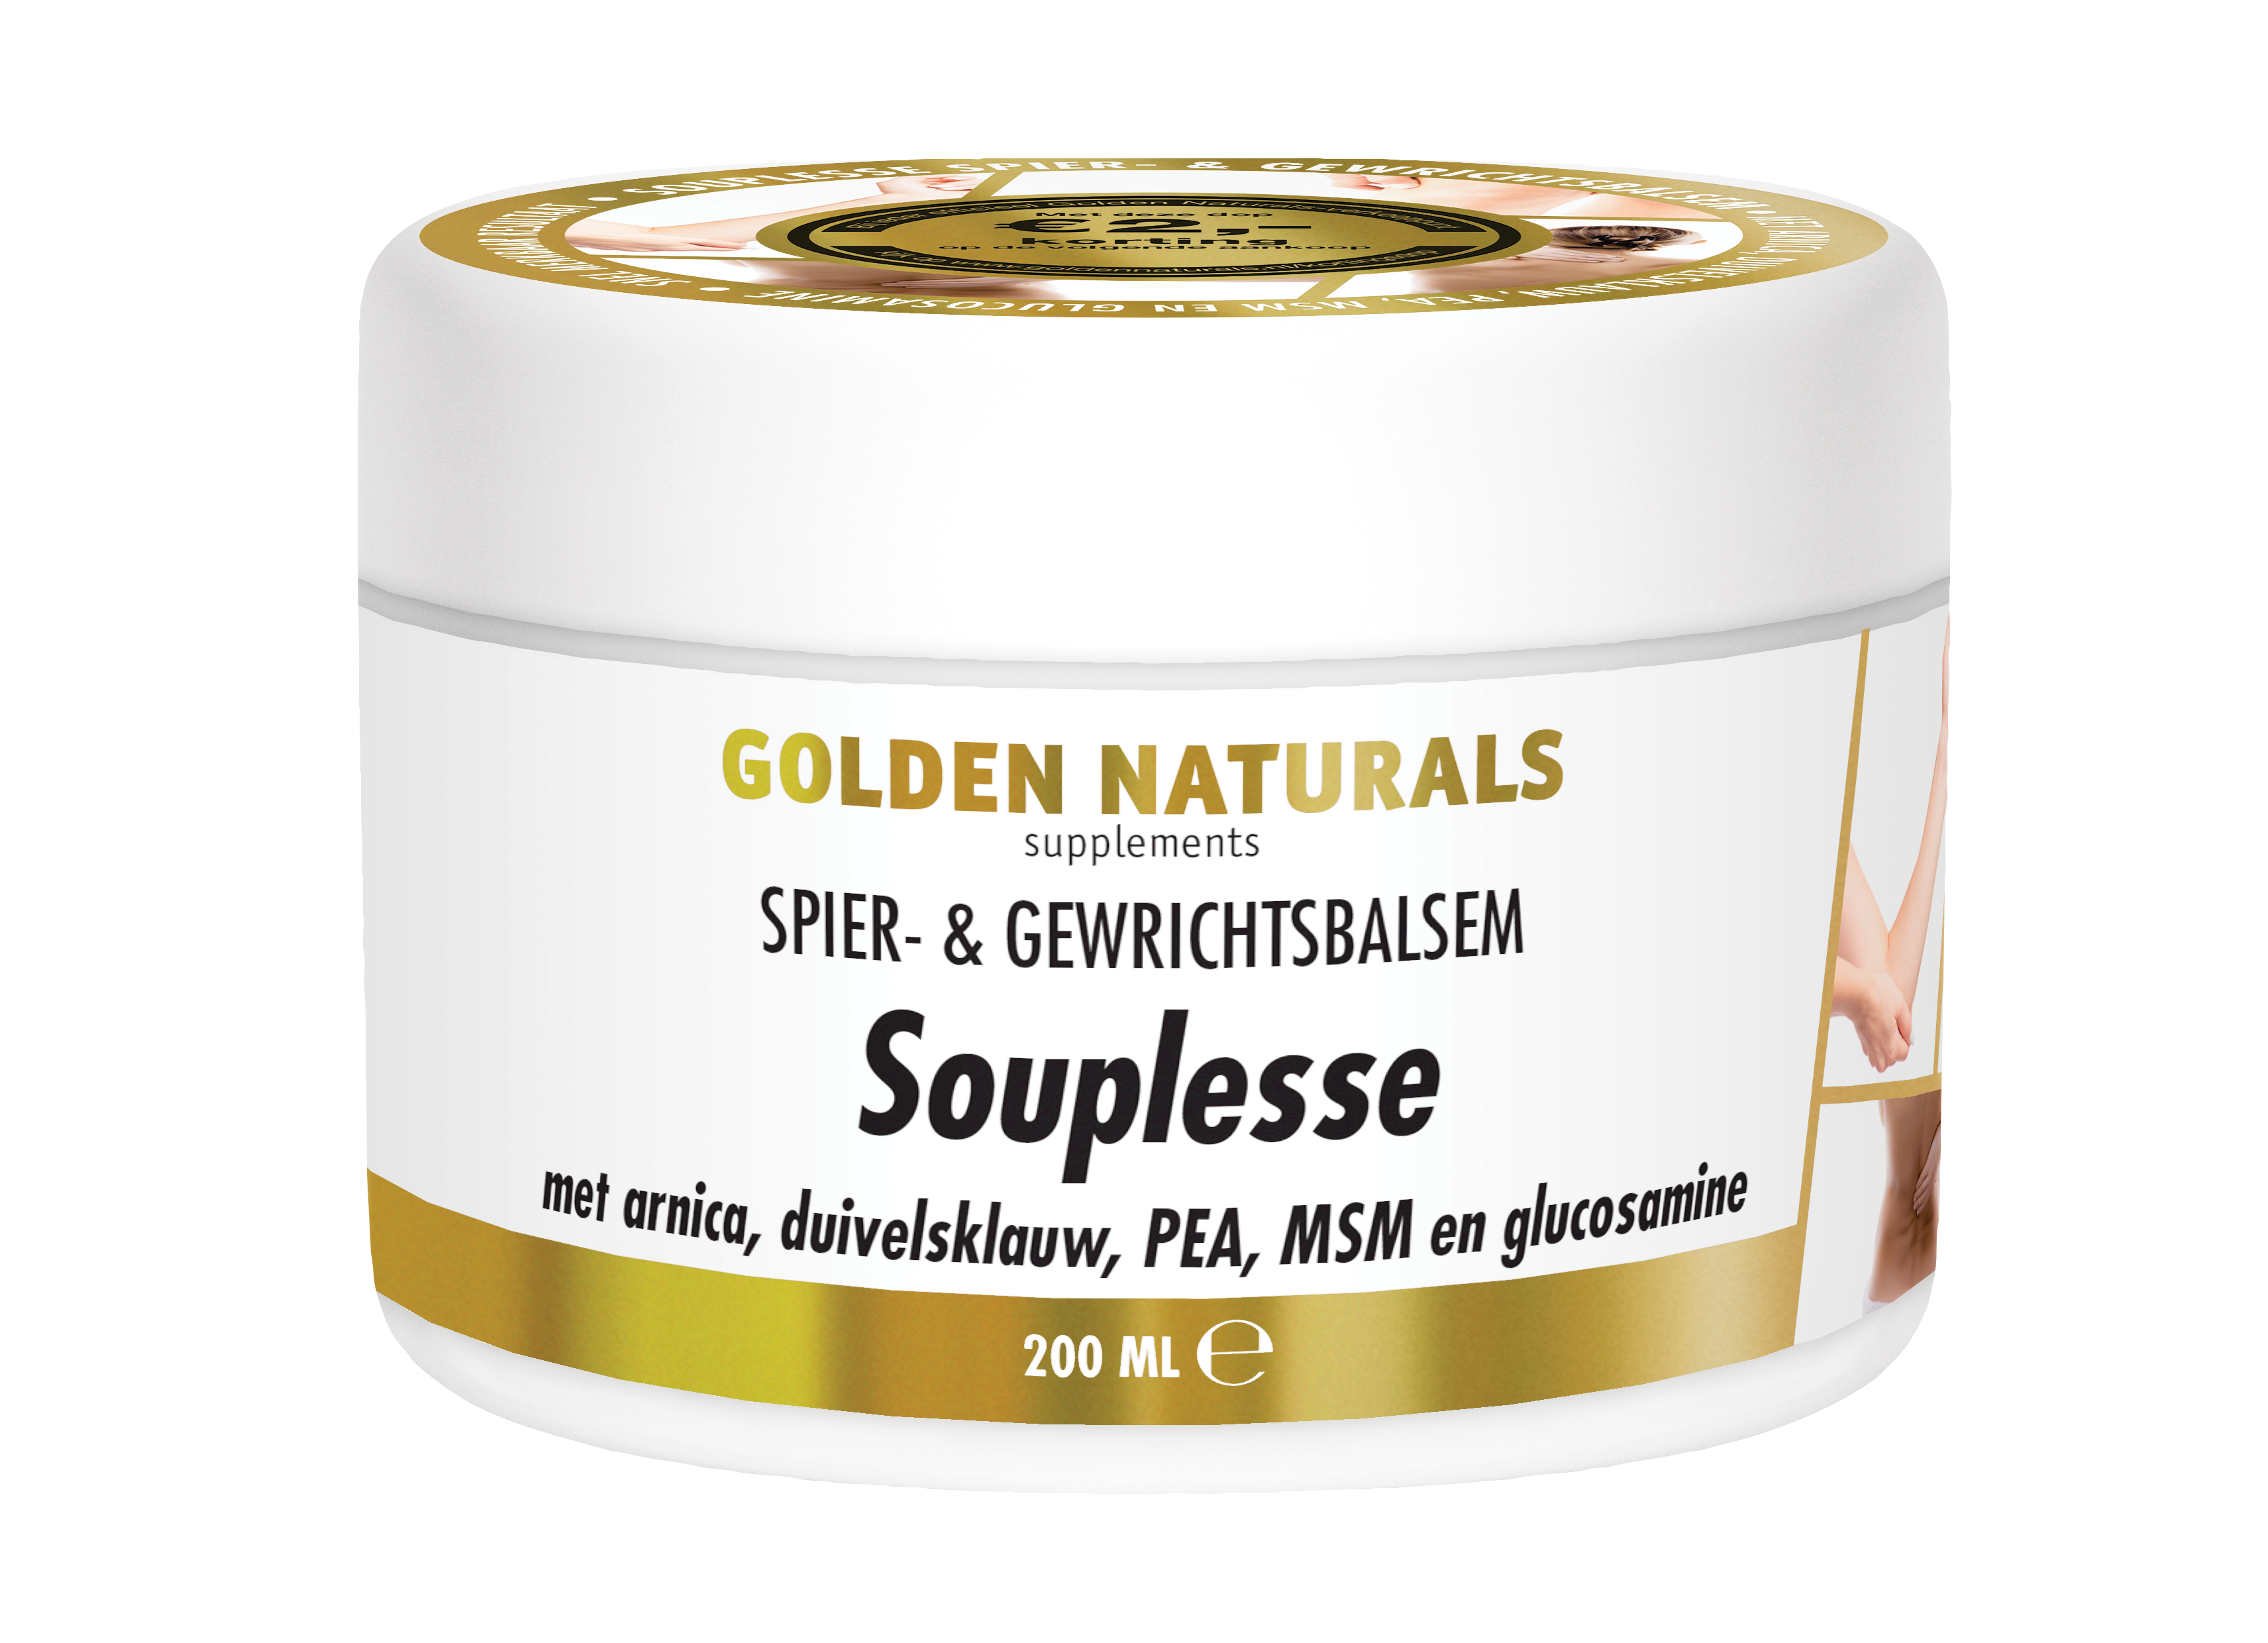 Golden Naturals Souplesse & Gewrichtsbalsem kopen? - GoldenNaturals.nl